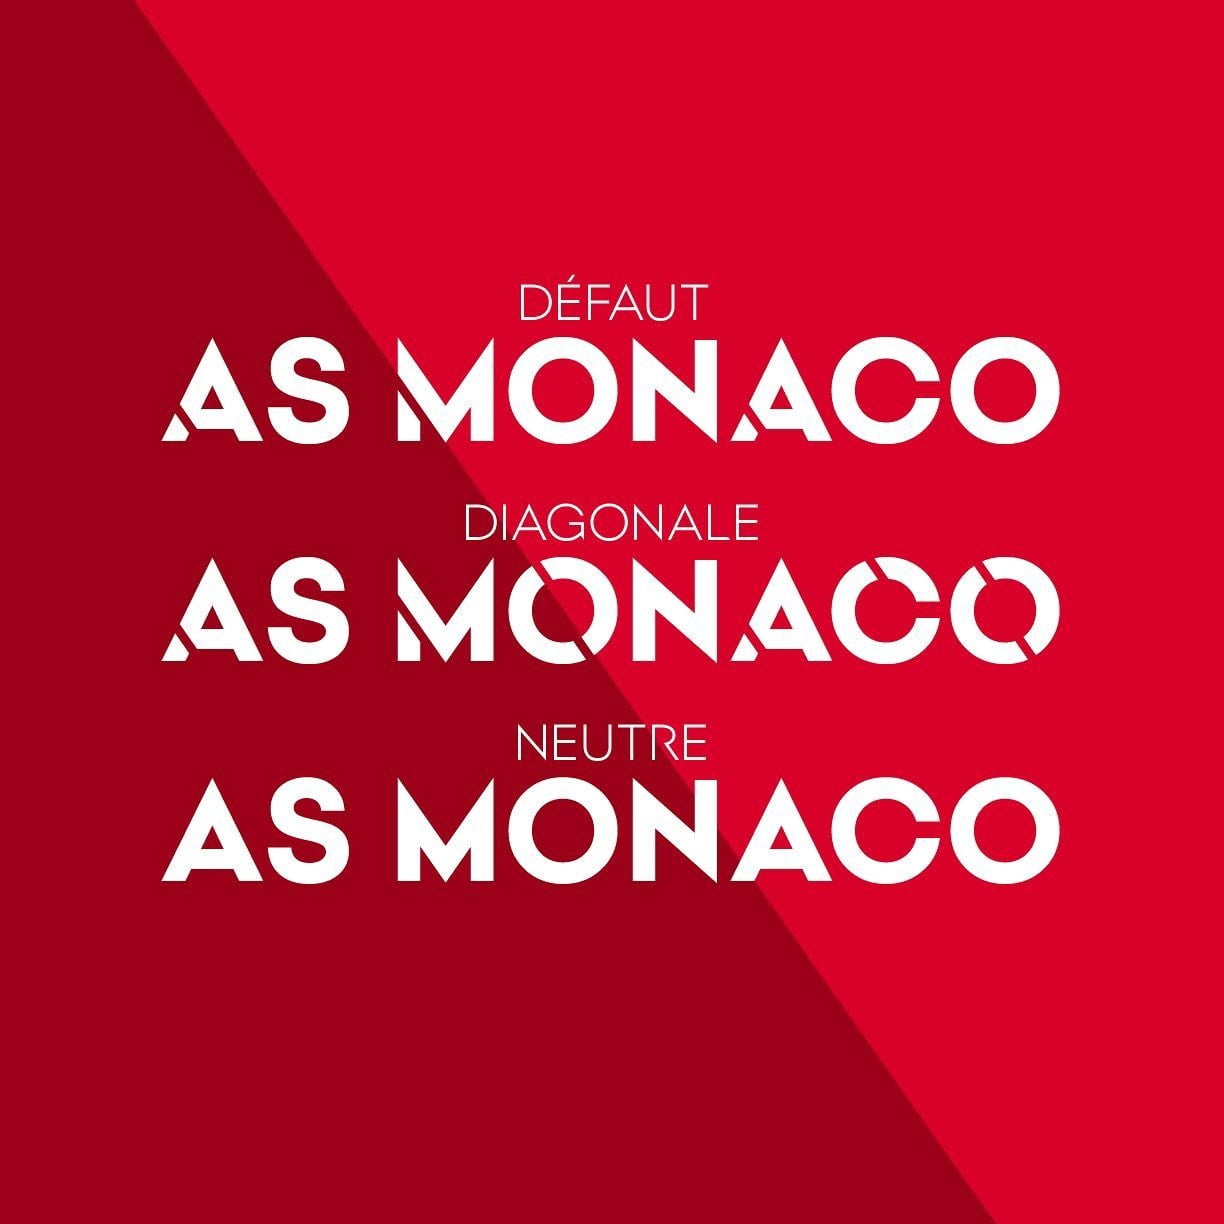 Ejemplo de fuente AS Monaco Diagonale